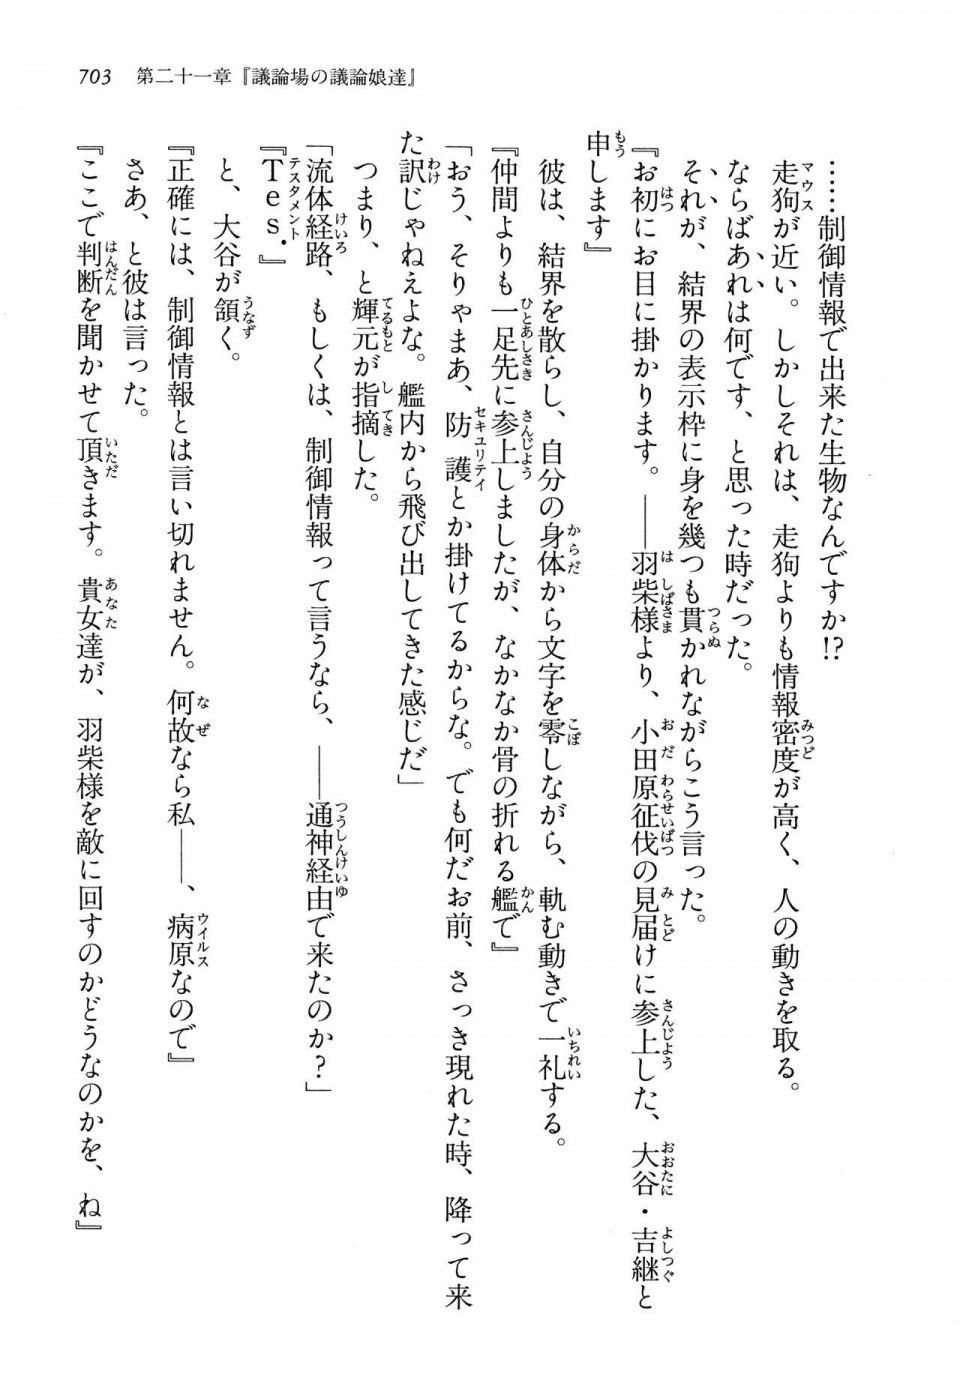 Kyoukai Senjou no Horizon LN Vol 13(6A) - Photo #703